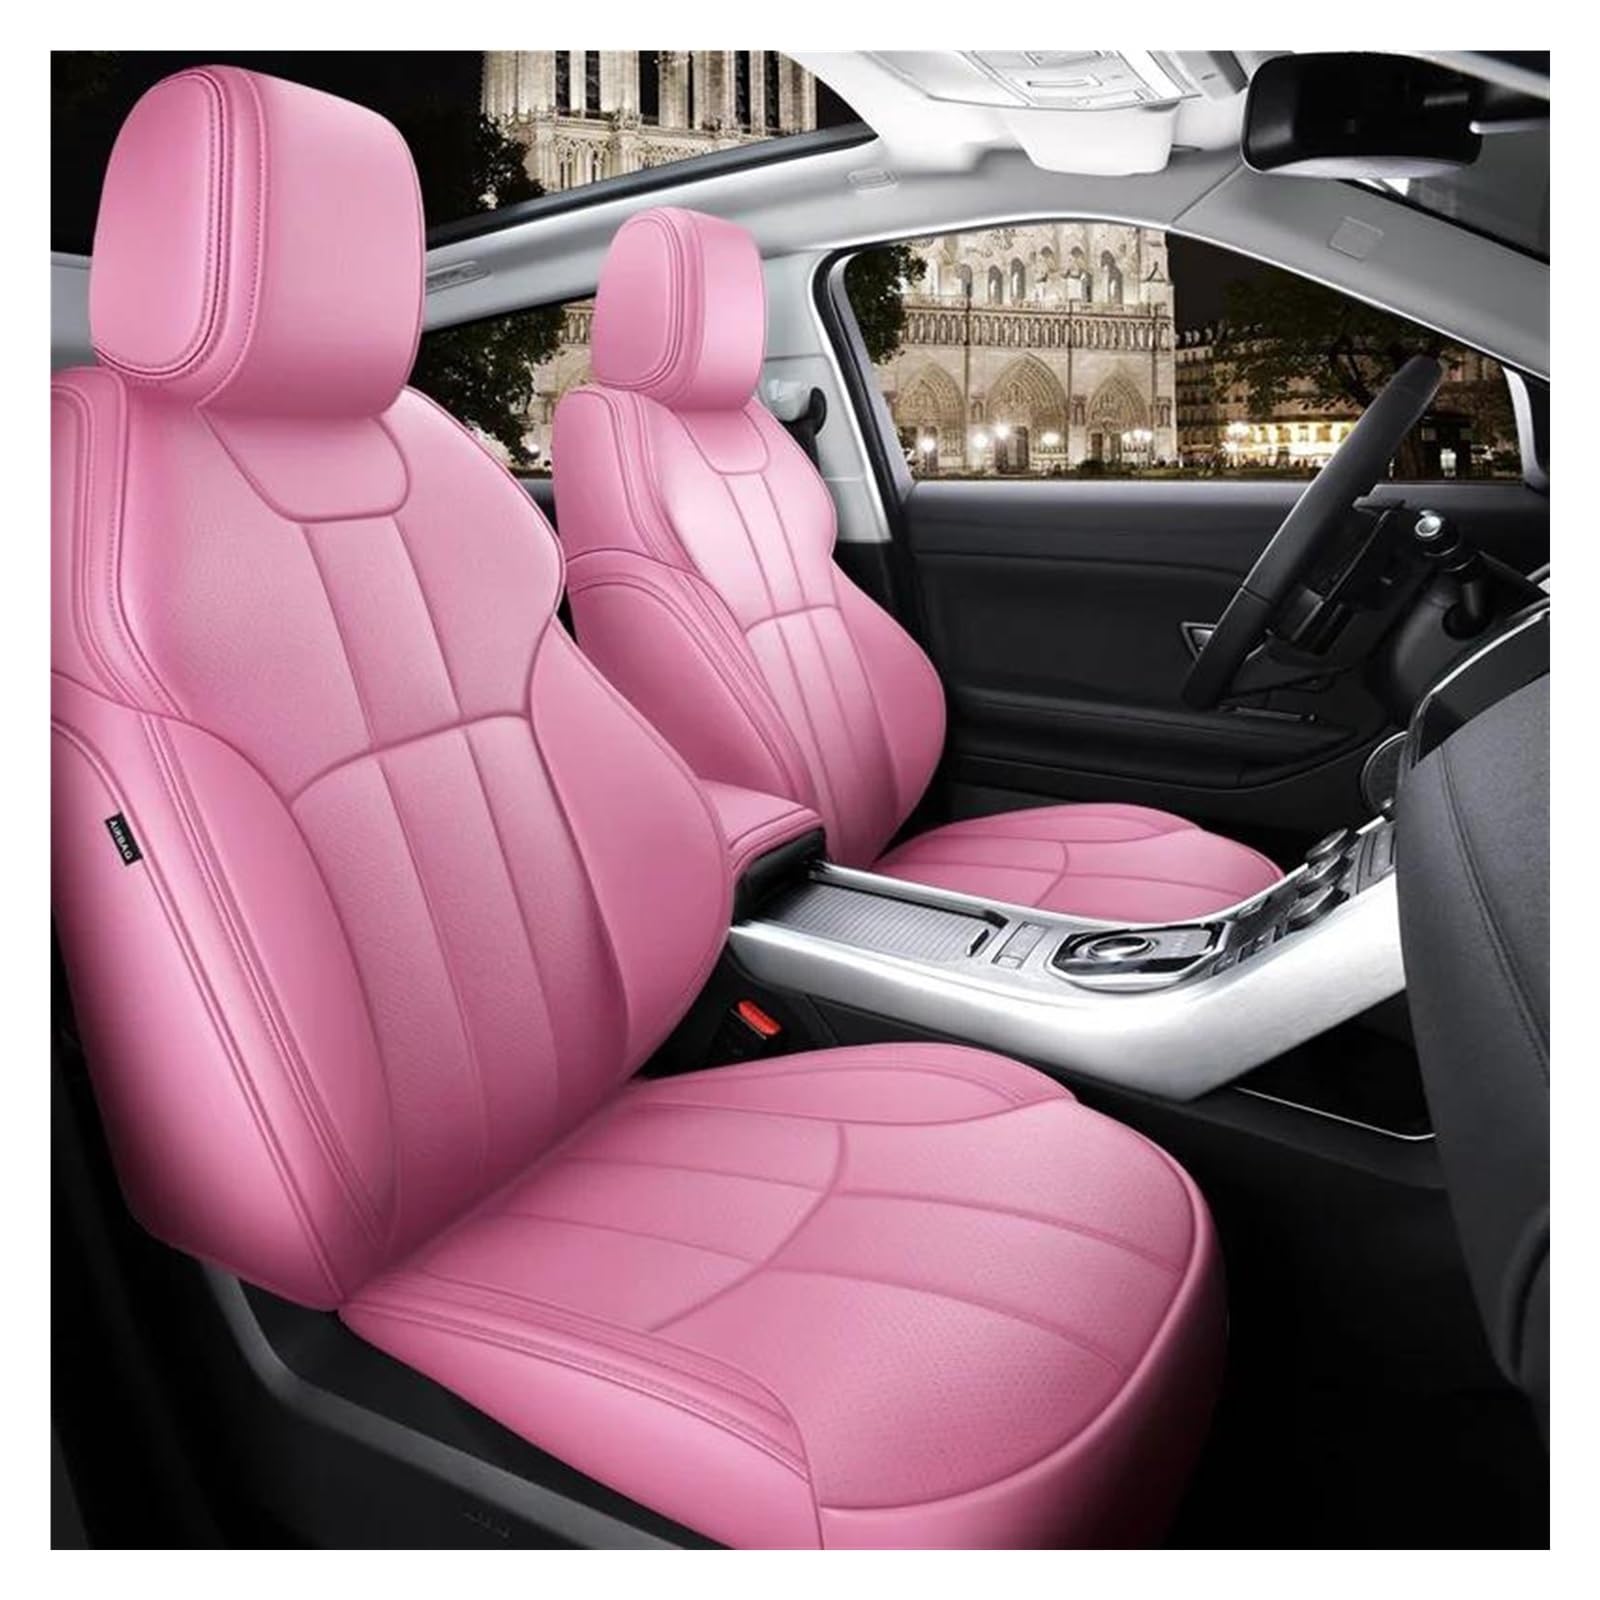 FOGJCMET Auto-Sitzbezüge Maßgeschneiderte Autositzbezüge Für 5 Sitze Komplettes Set Aus Leder Für VW Für Golf Für Tuguan Mk7 Autositzschoner(Pink) von FOGJCMET